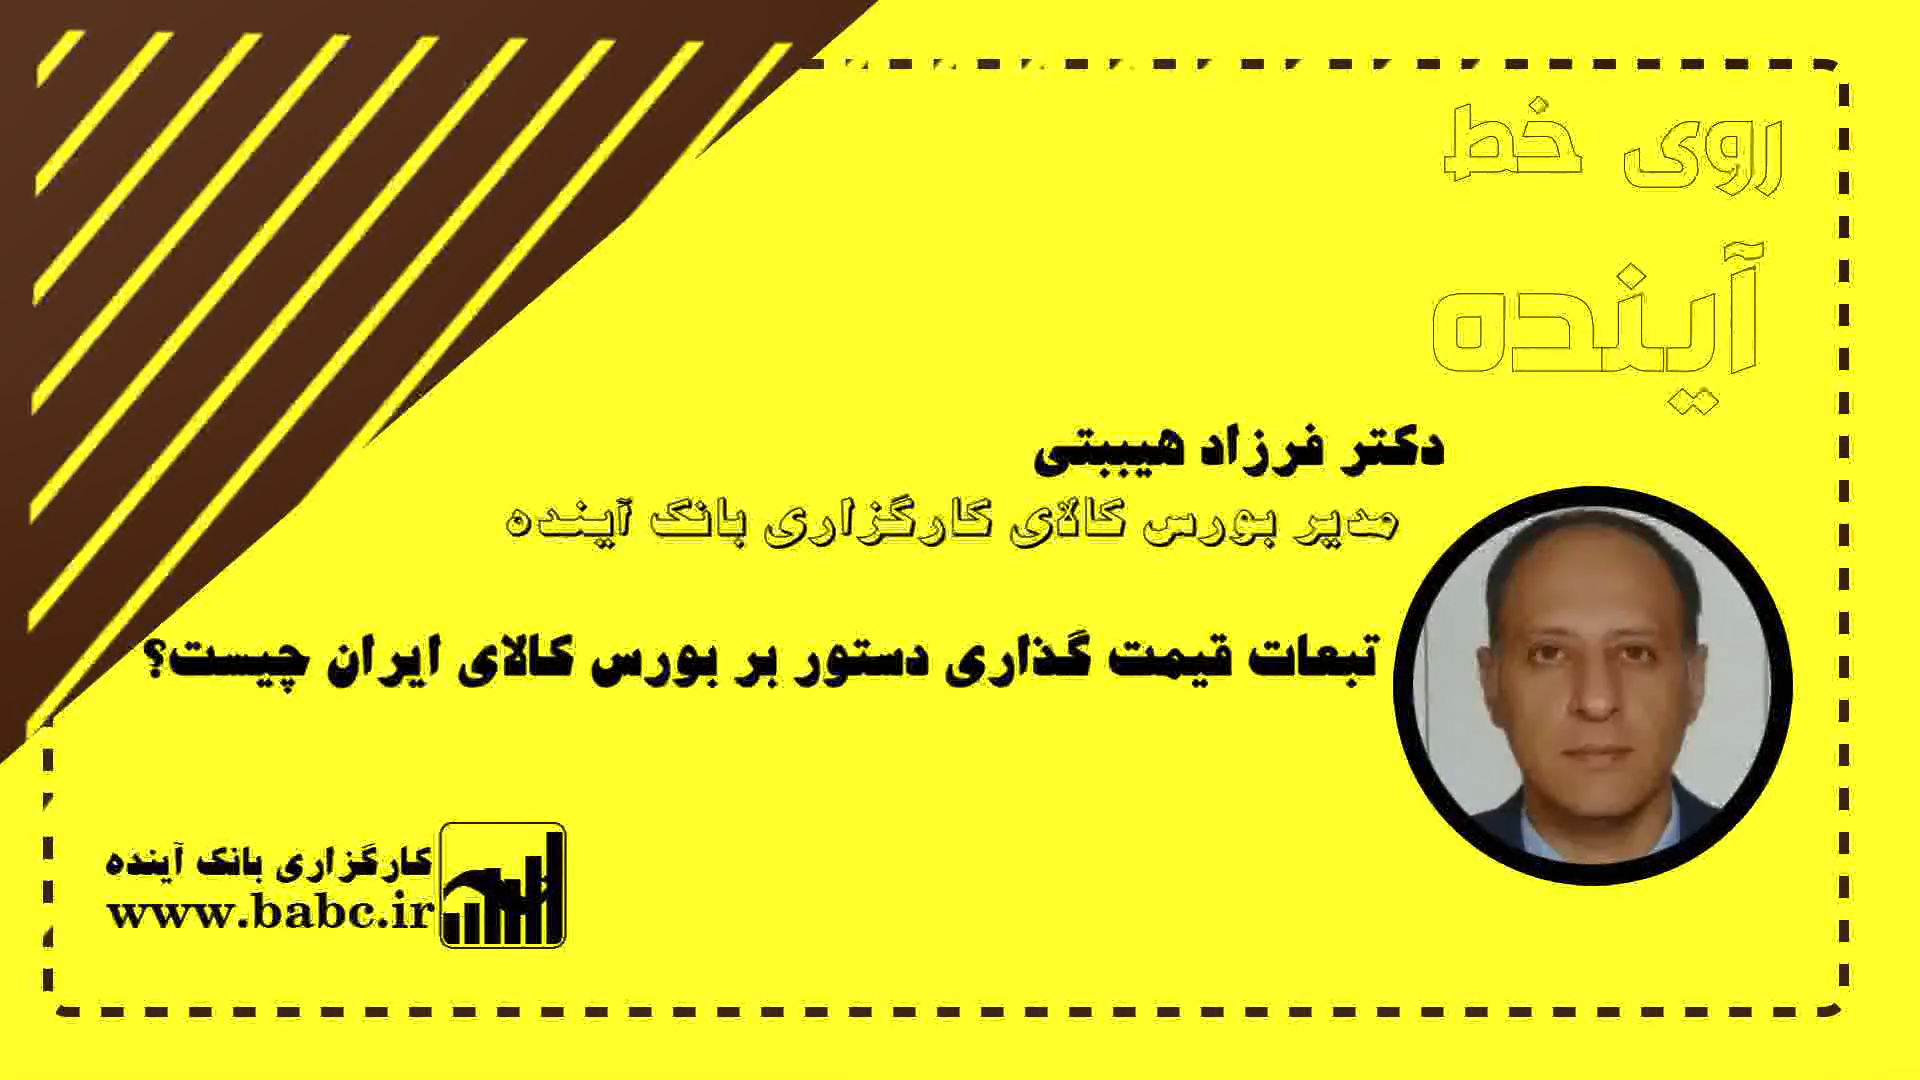 بررسی تبعات قمیت گذاری دستوری بر بورس کالای ایران، در گفتگو با دکتر فرزاد هیبتی